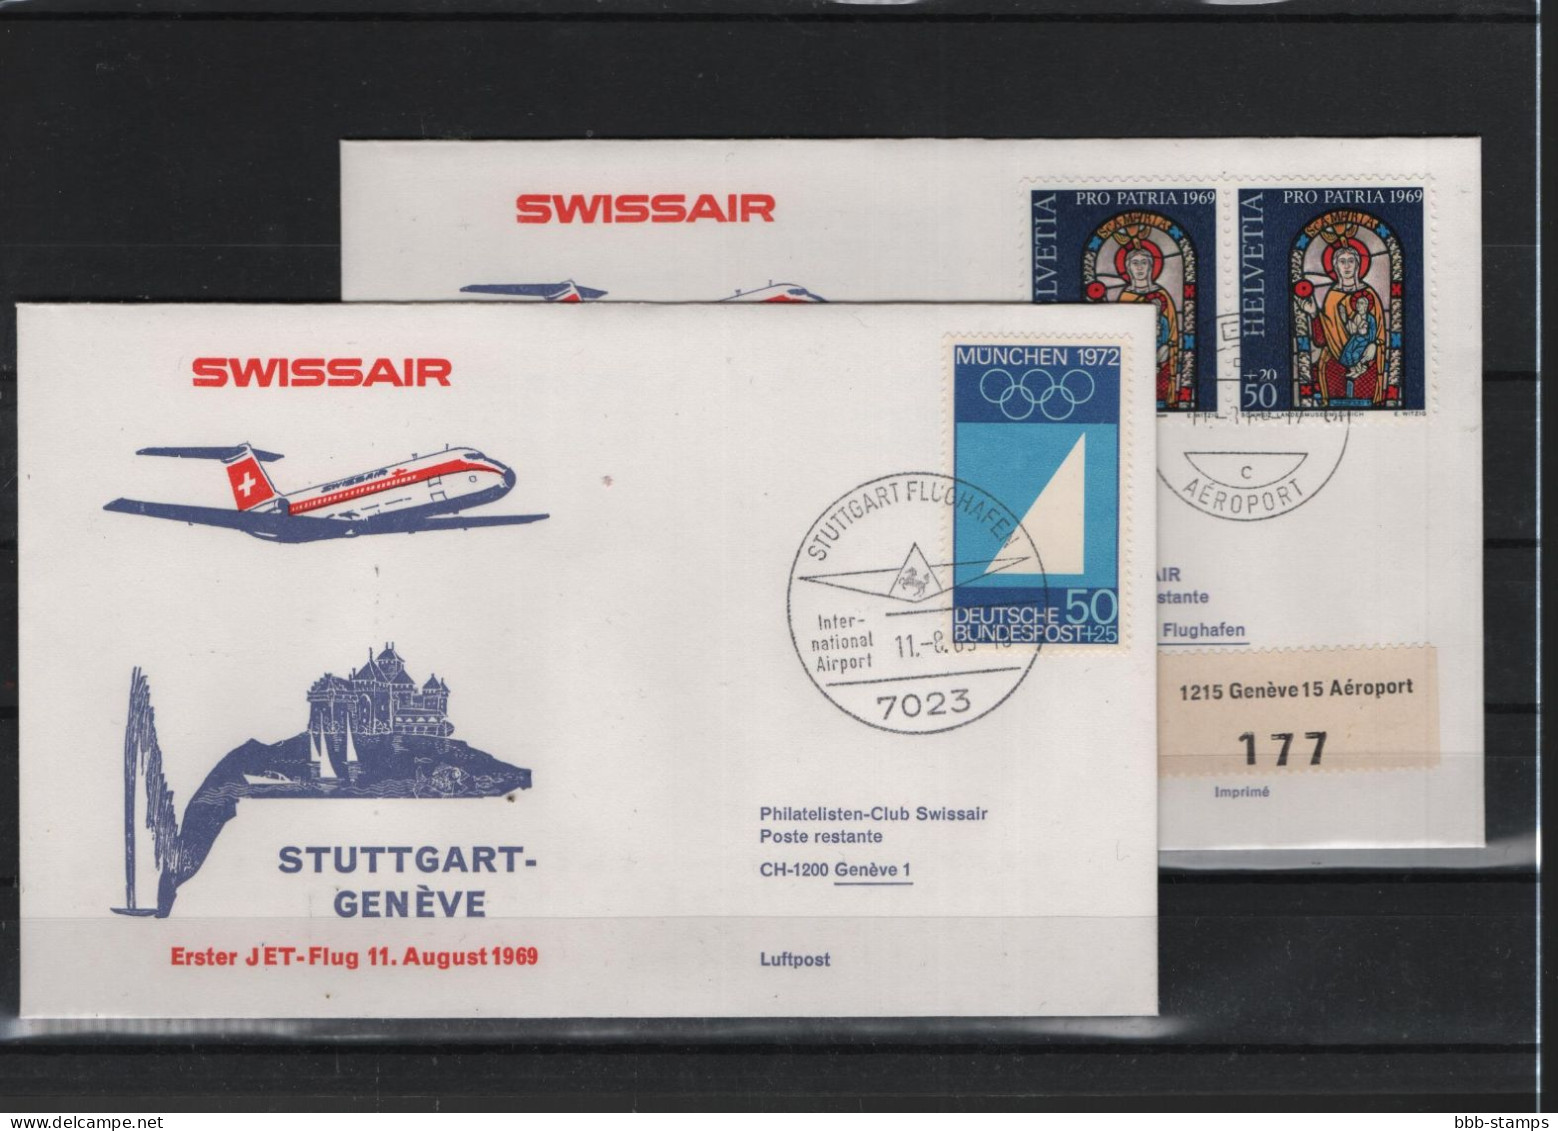 Schweiz Air Mail Swissair  FFC  11.8.1969 Genf - Stuttgart VV - Premiers Vols